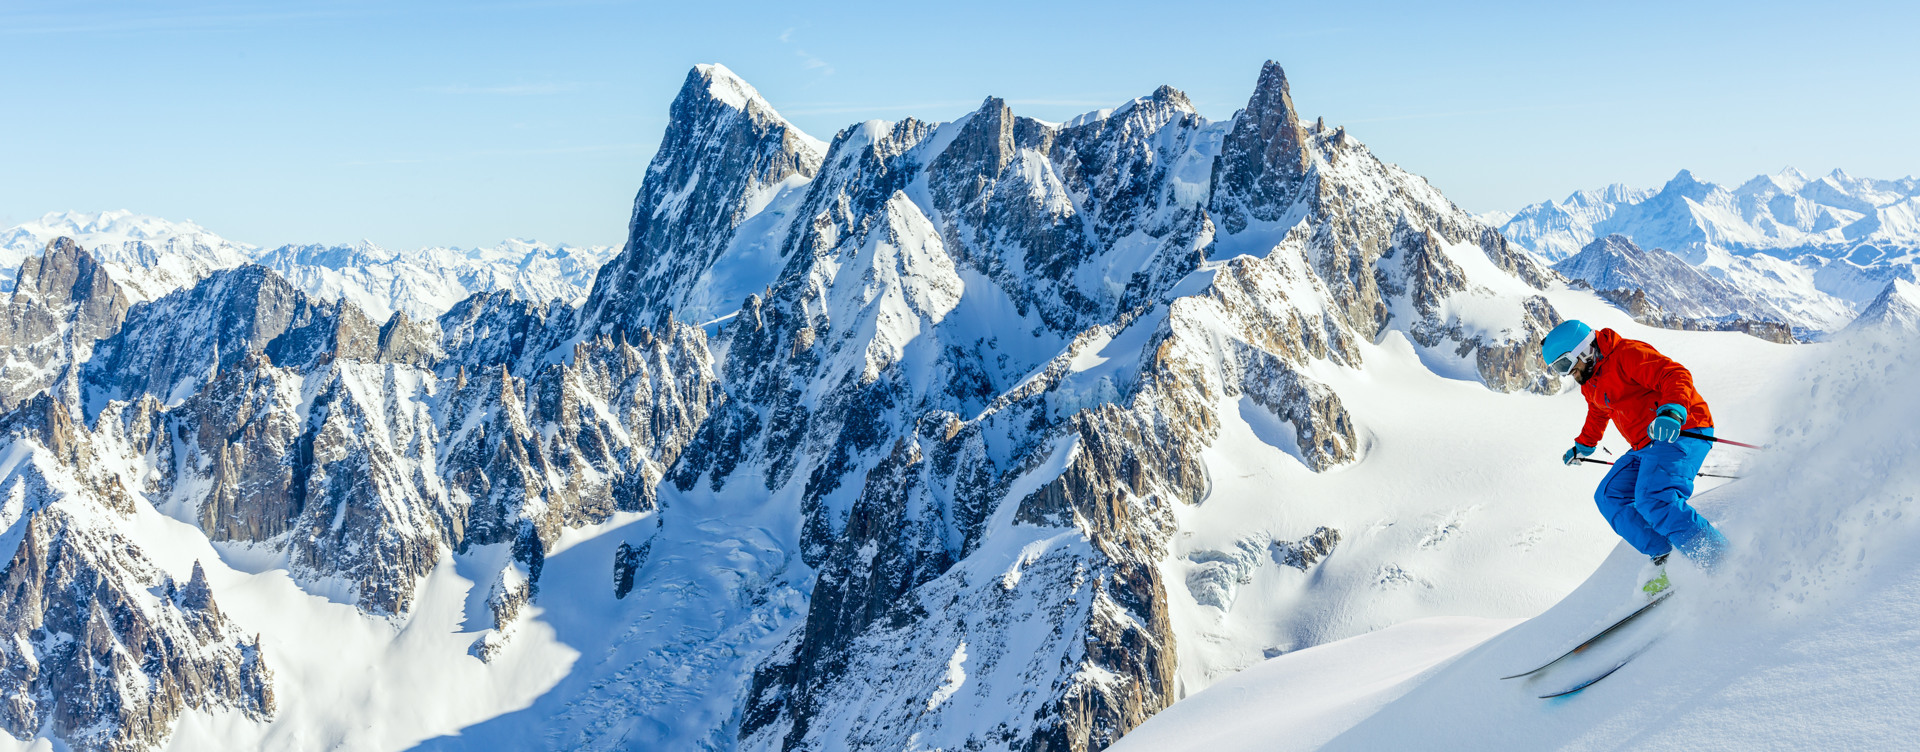 Vive un invierno inolvidable en los Alpes